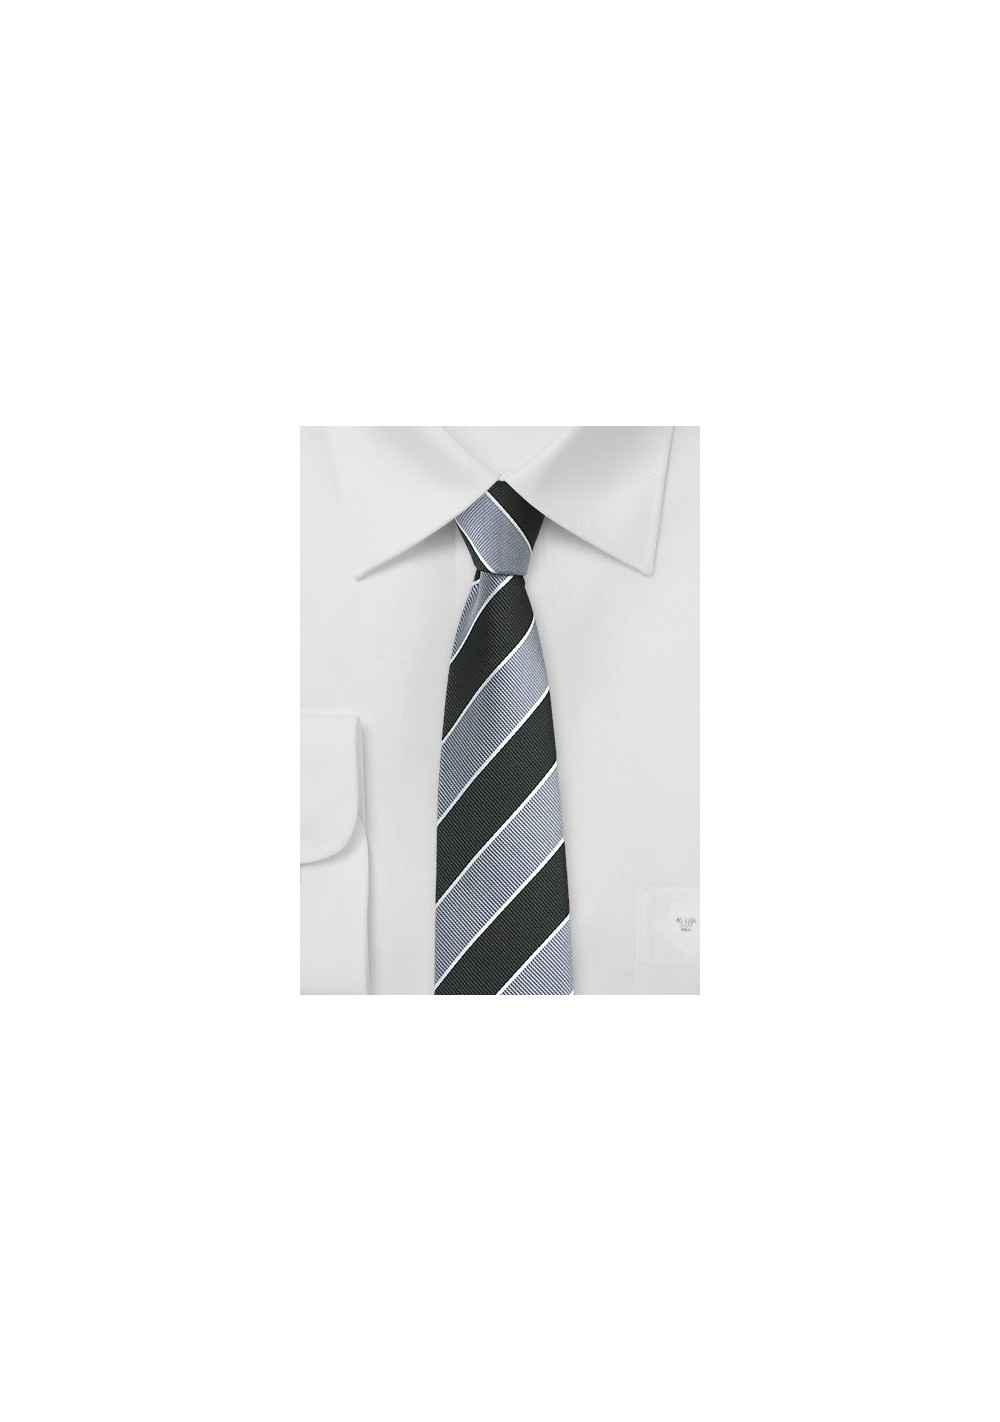 Repp Stripe Skinny Tie in Silver and Black